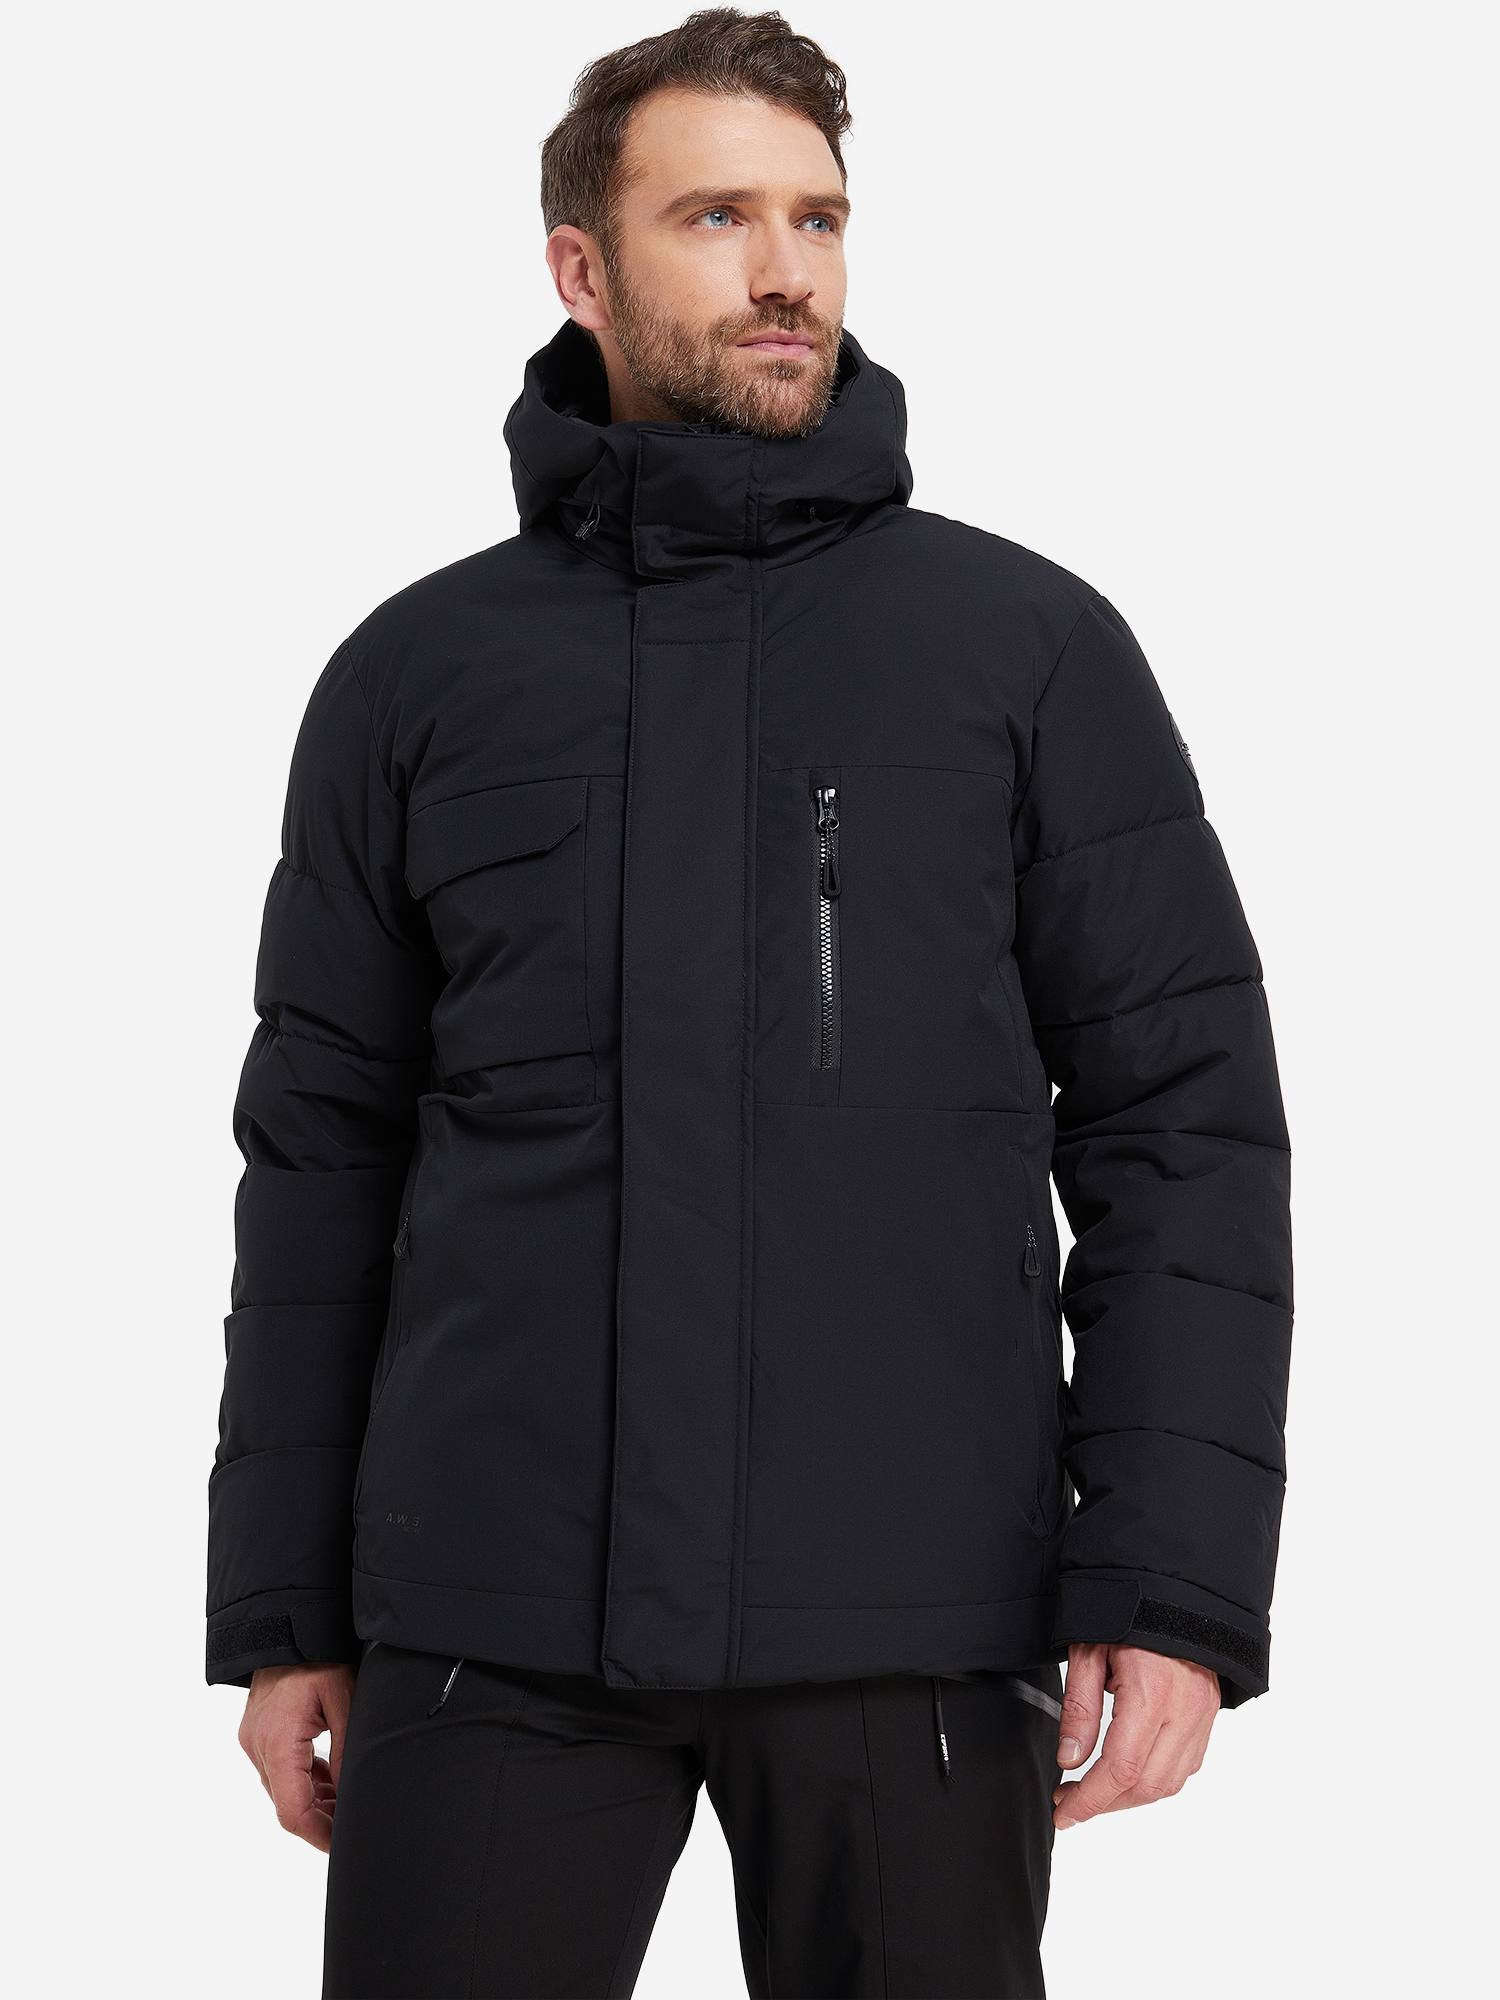 Куртка утепленная мужская IcePeak Carver, Черный куртка утепленная мужская icepeak edgerton белый